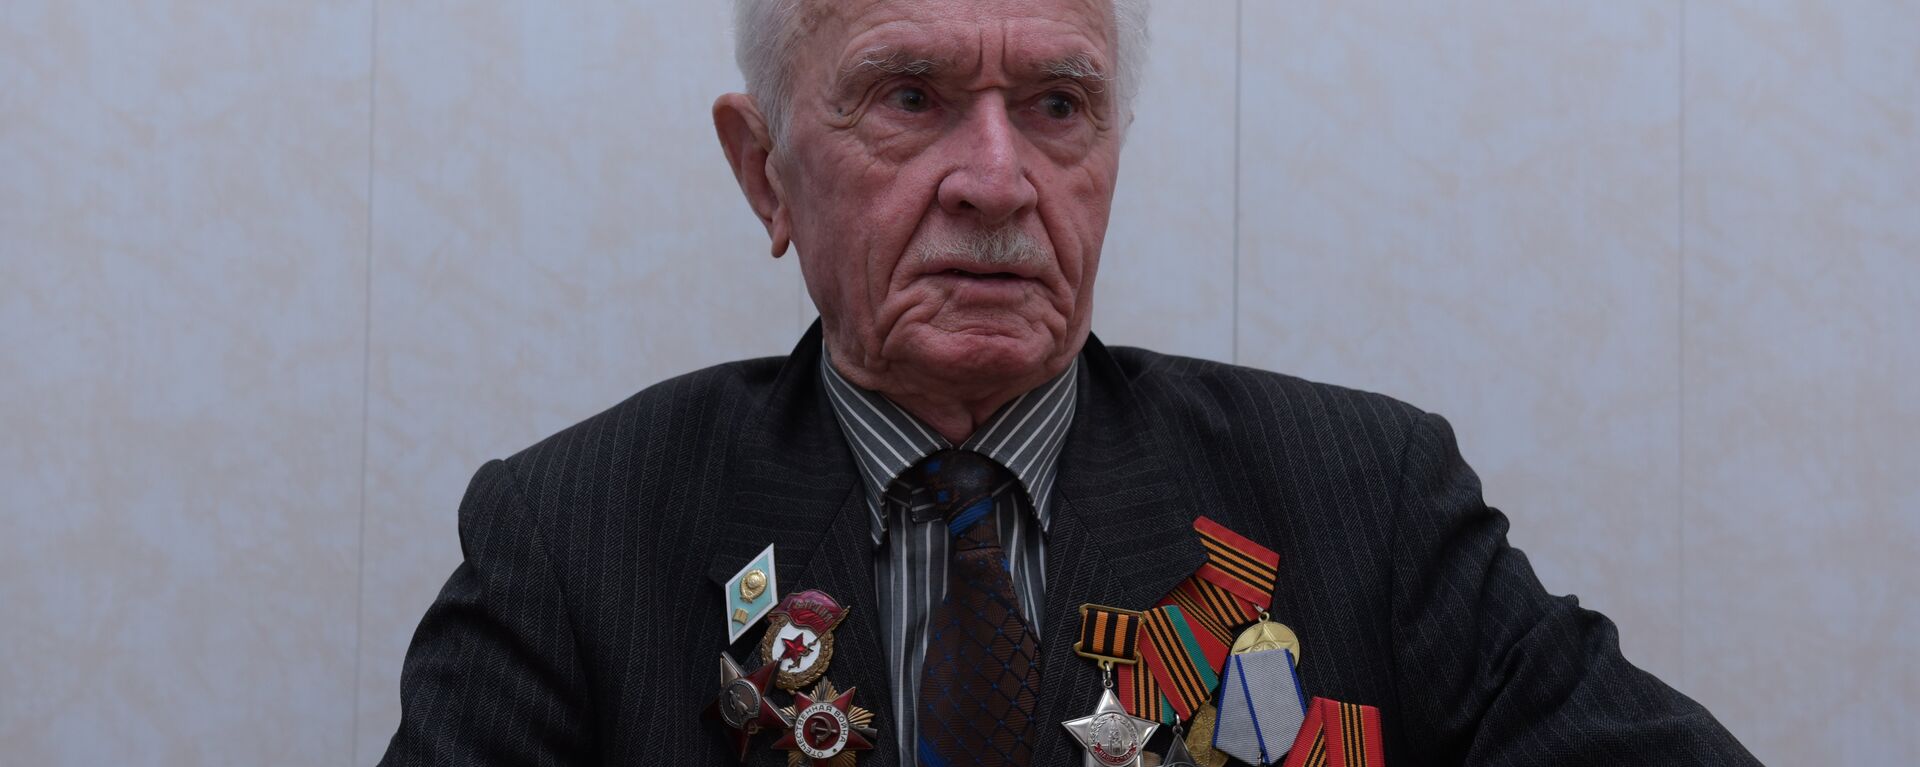 Ветеран ВОВ Ачба Илья - Sputnik Абхазия, 1920, 09.05.2018